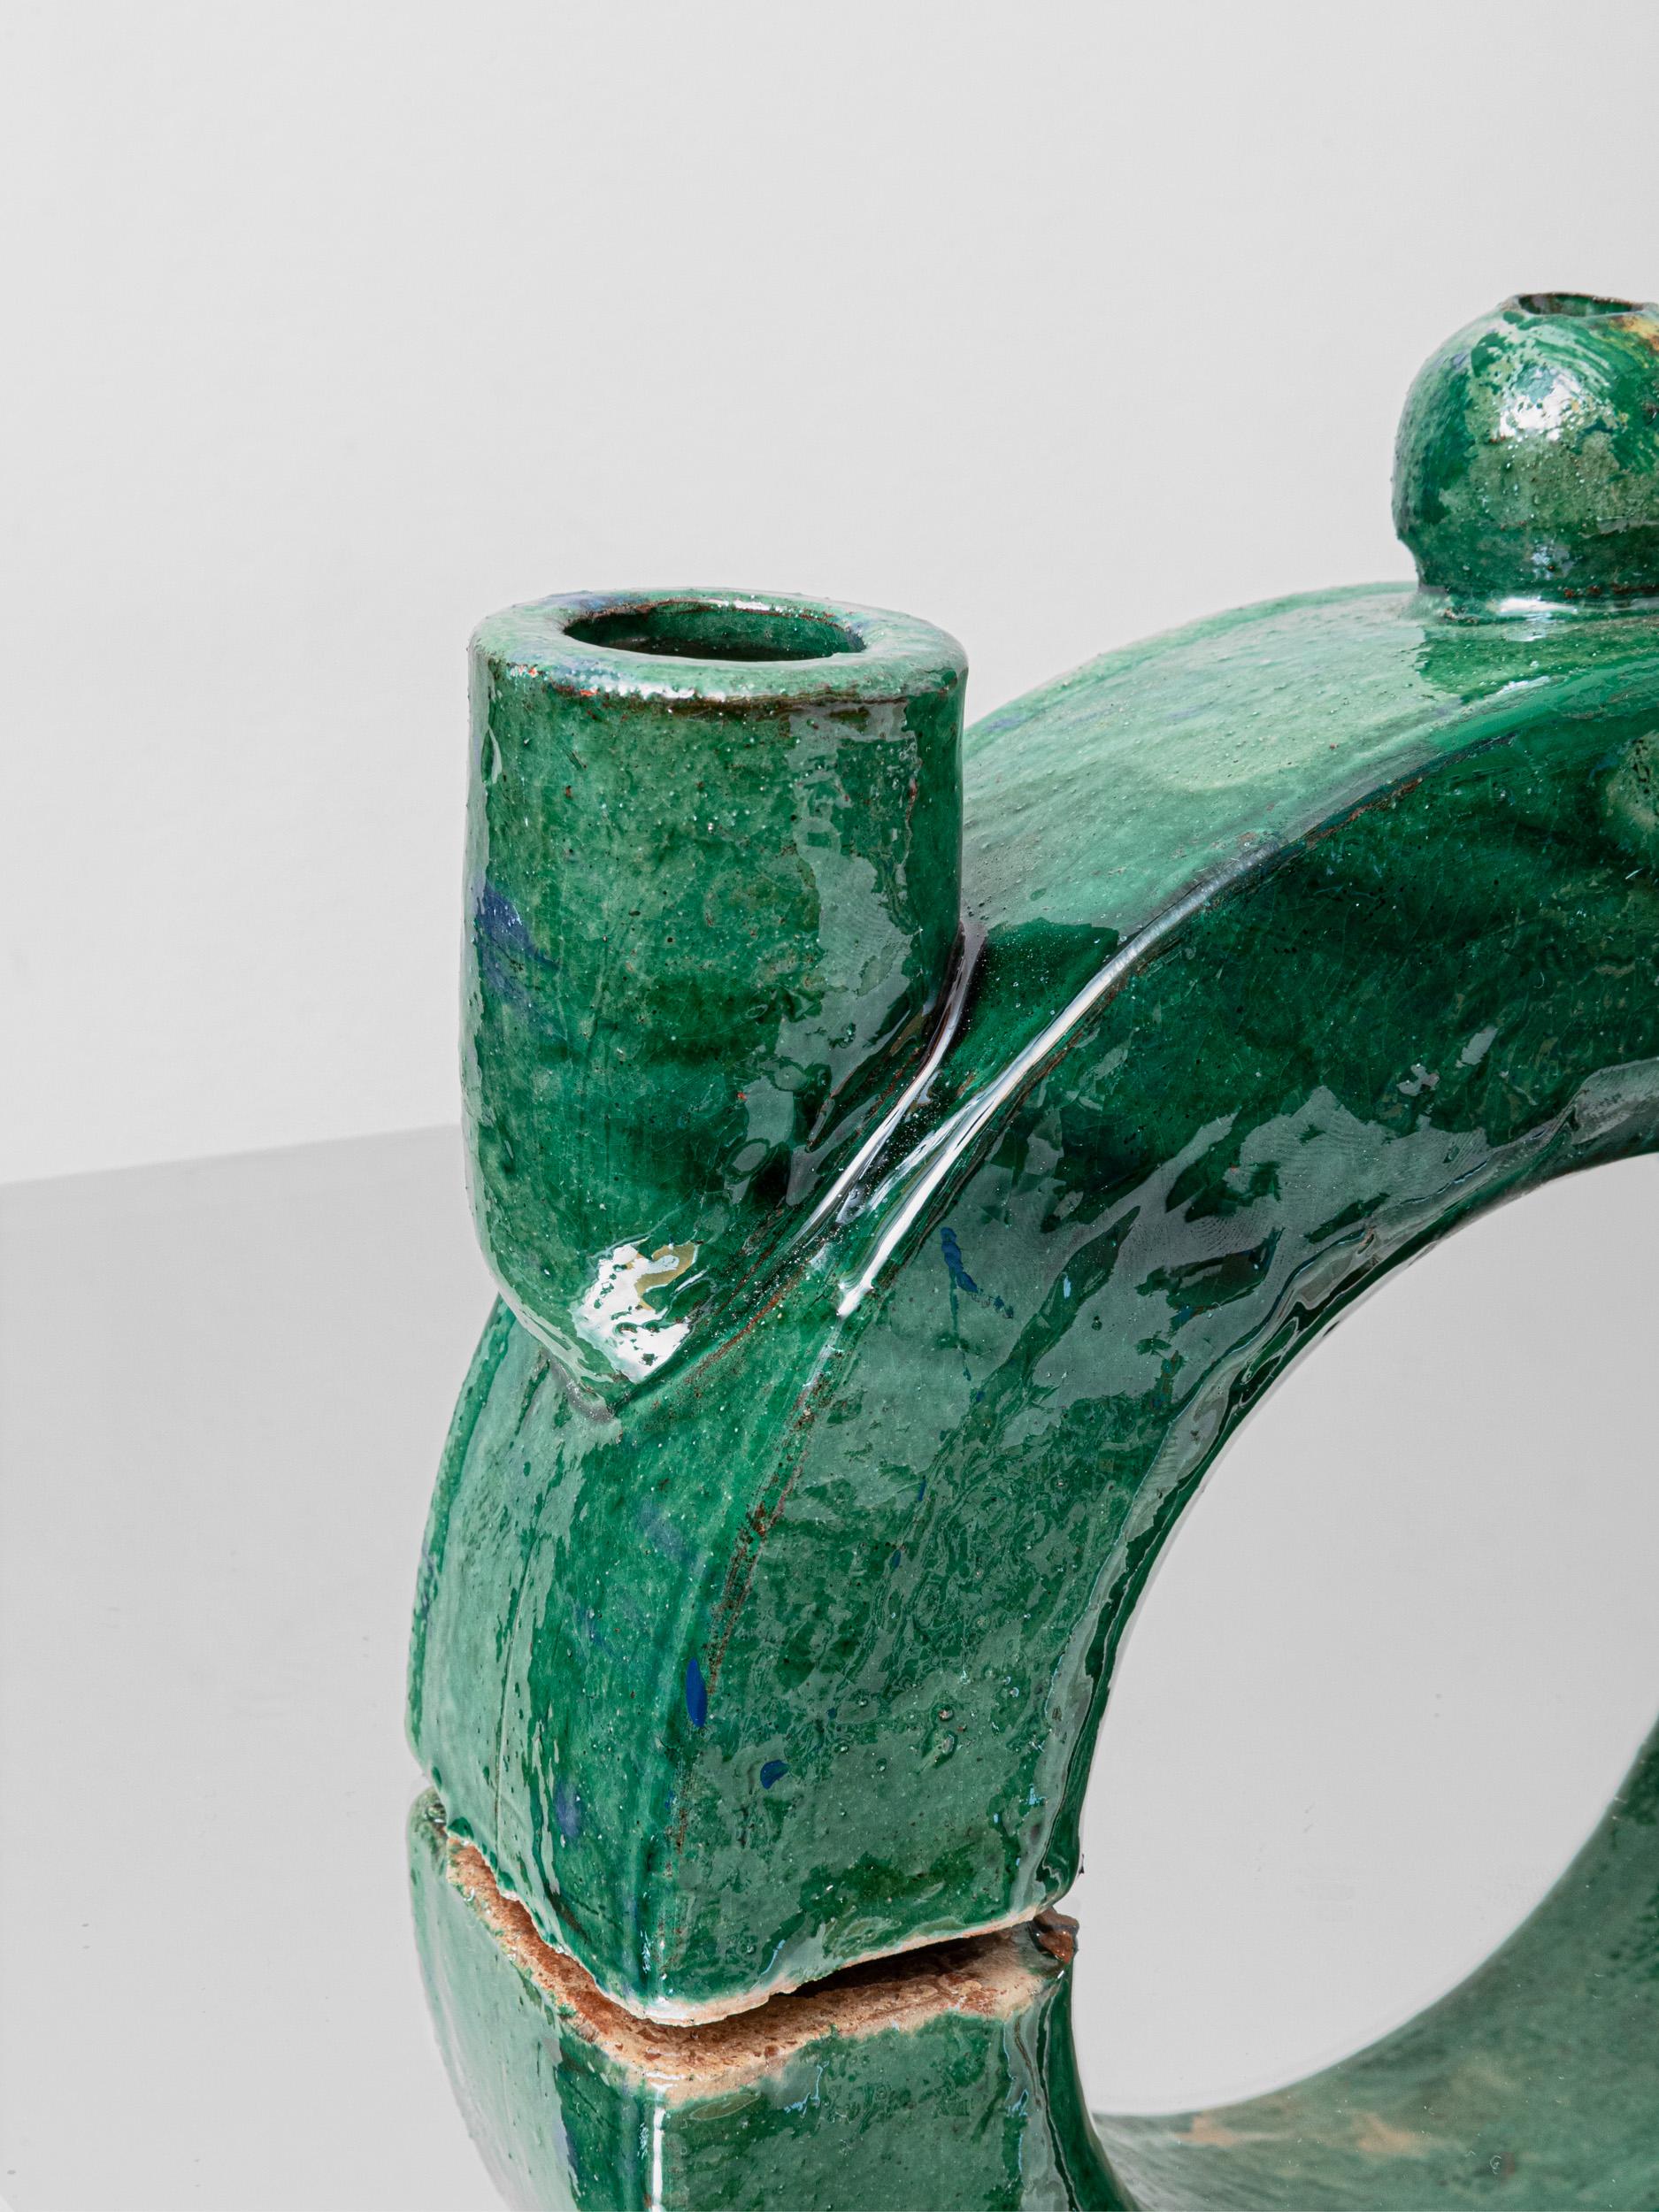 Kerzenhalter Kollektion von Sophie Dries

MINELO ist ein von Sophie Dries entworfener Kerzenständer, der in Seminara in der süditalienischen Region Kalabrien von geschickten Kunsthandwerkern hergestellt wird. MINELO ist eine Brücke, die einen